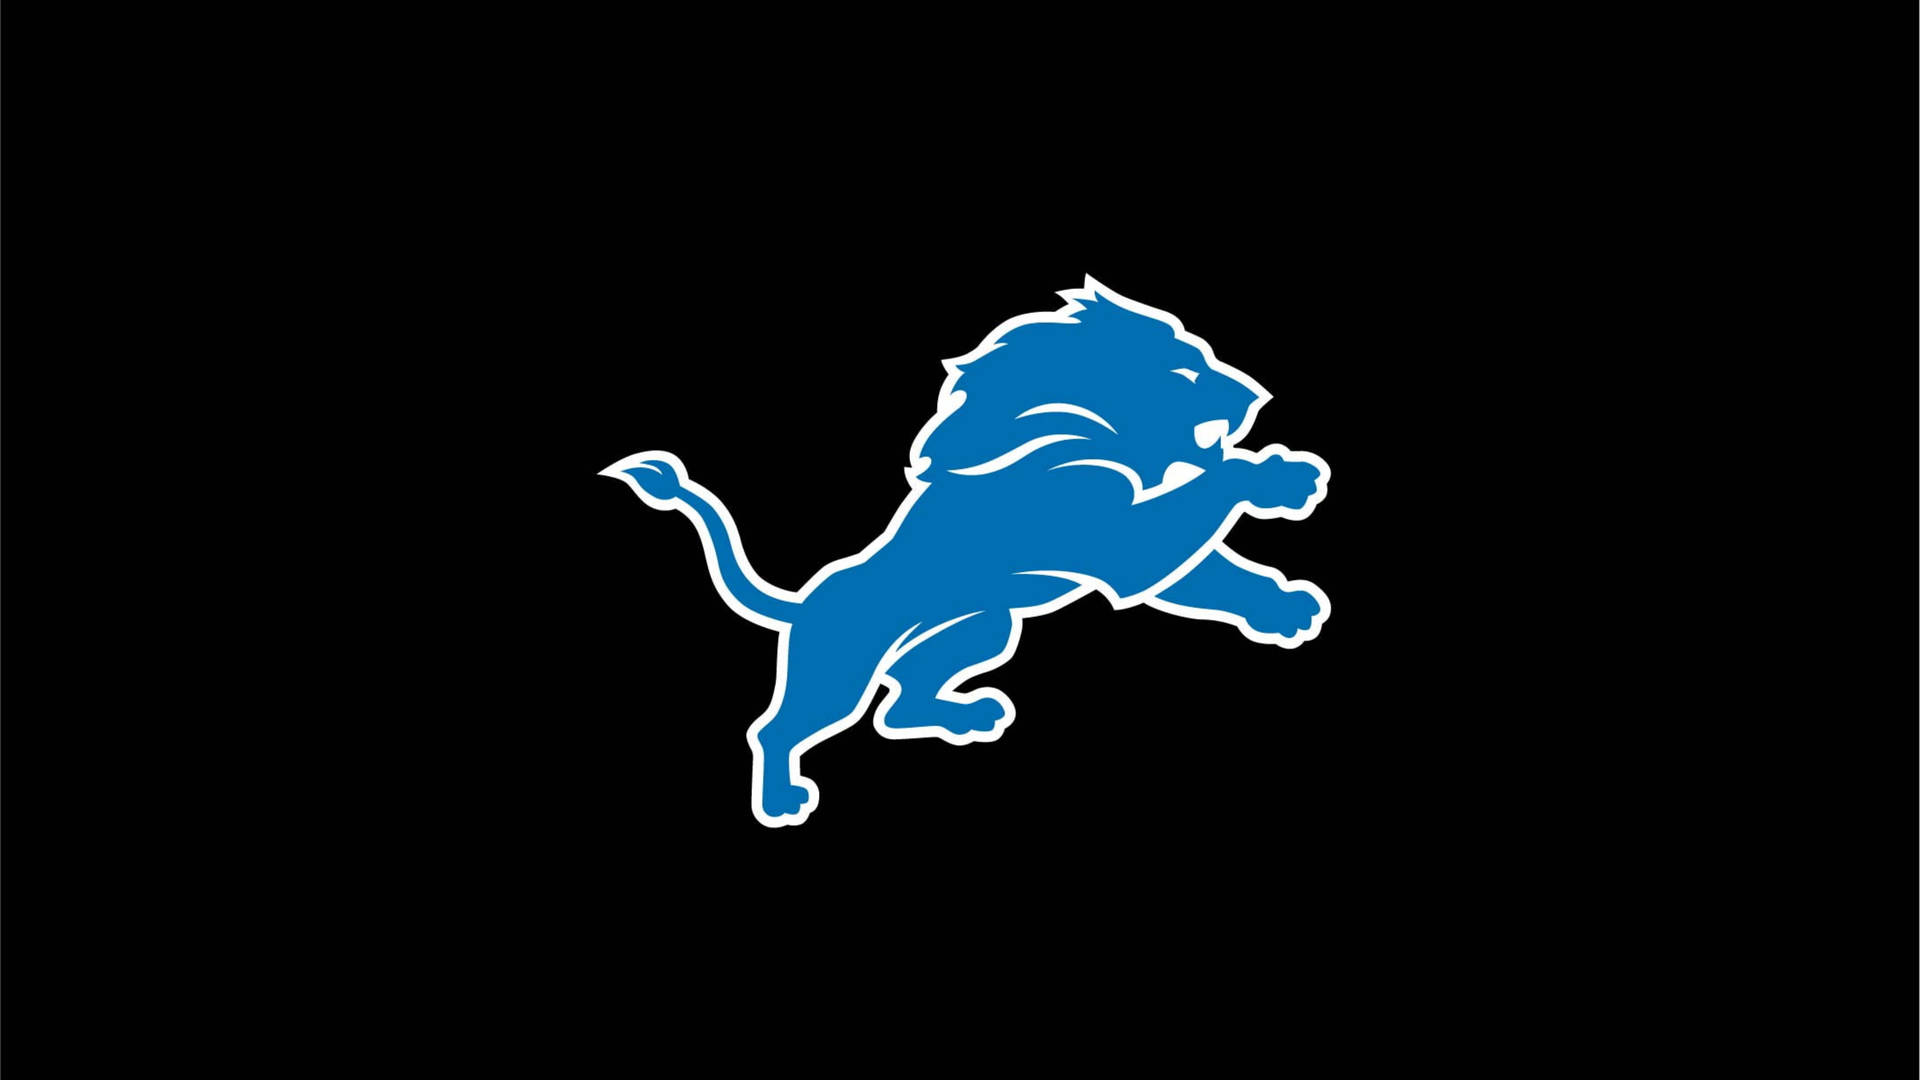 Detroit Lions Dark Logo Background